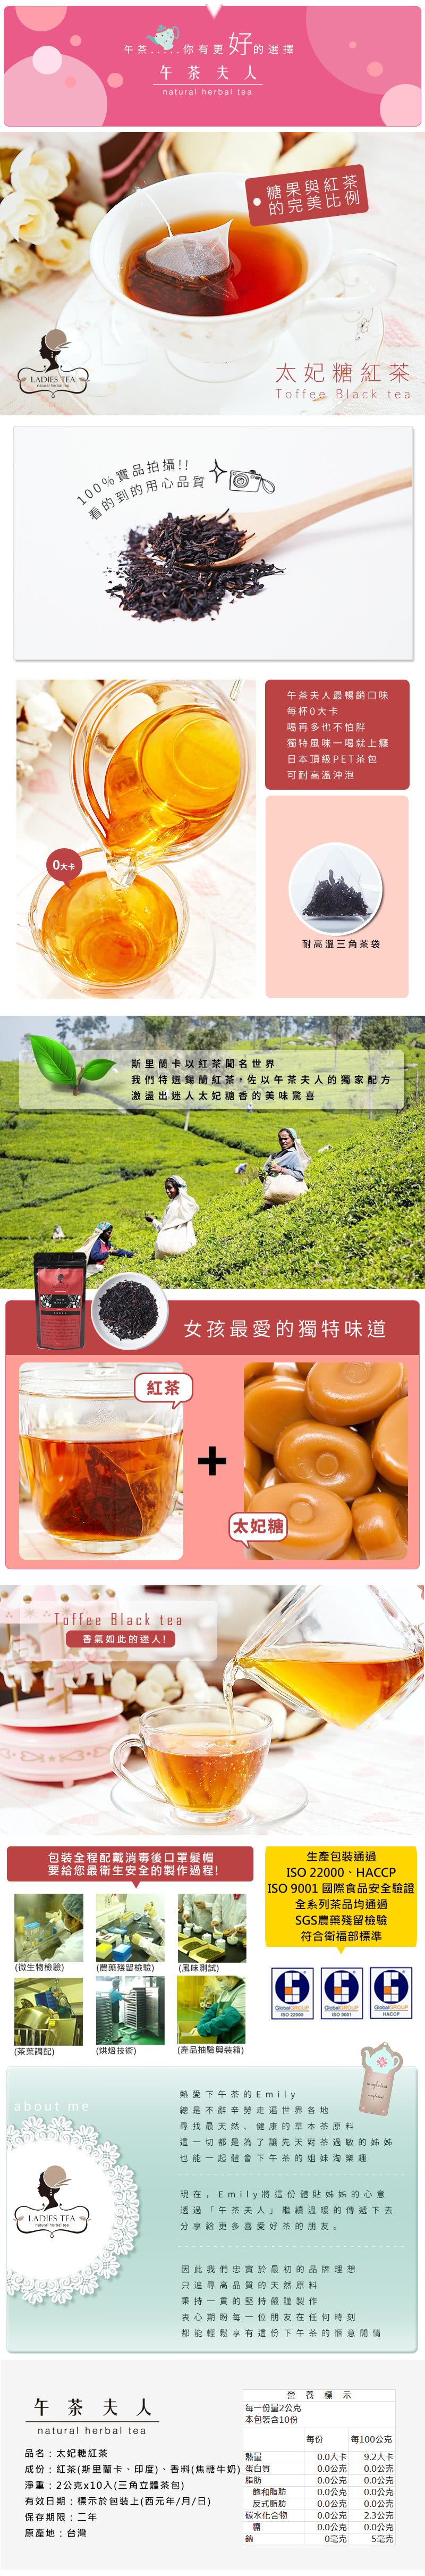 【午茶夫人】太妃糖紅茶10入/袋(糖果與紅茶的完美比例)